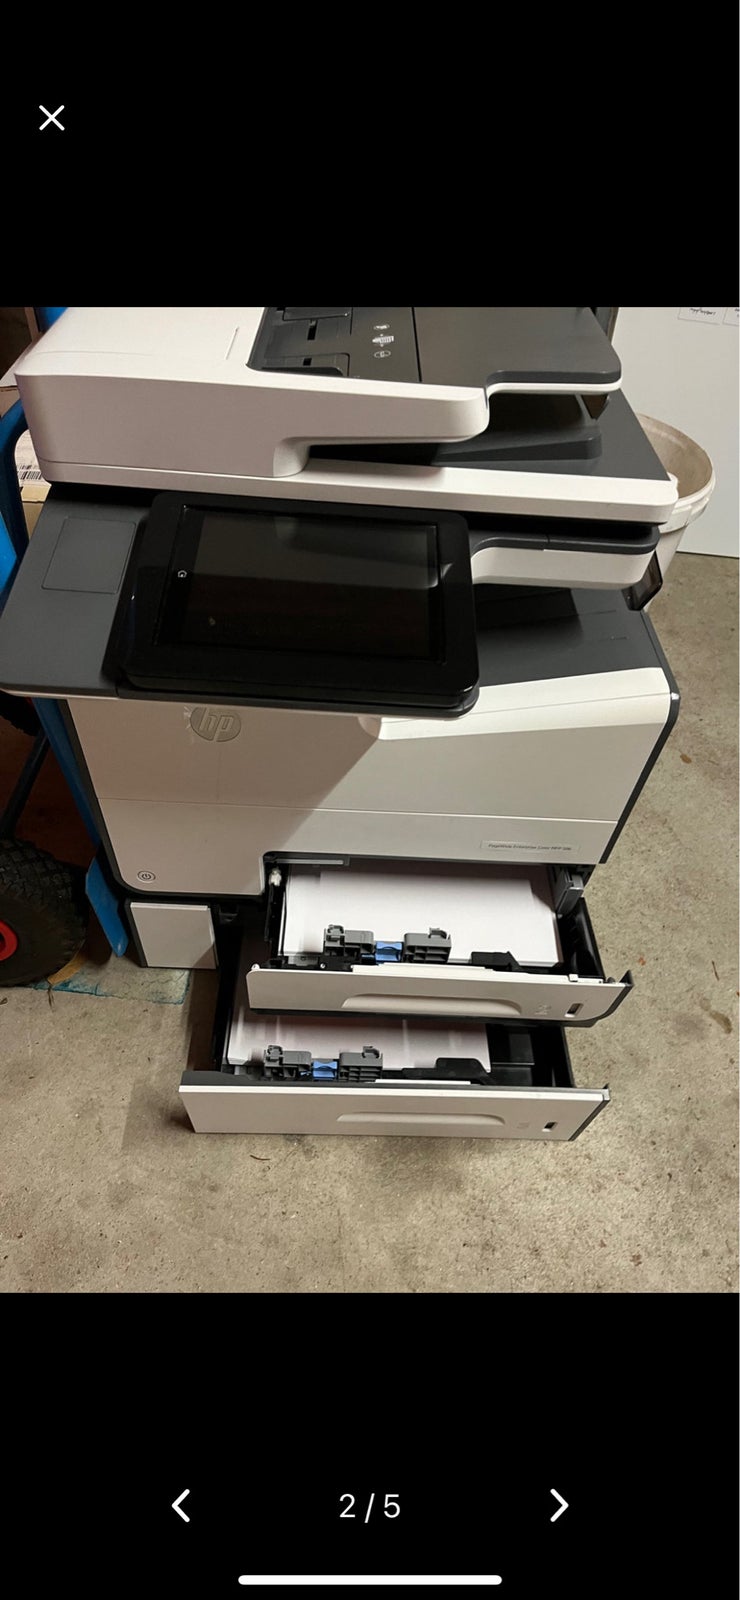 Laserprinter, multifunktion, m. farve